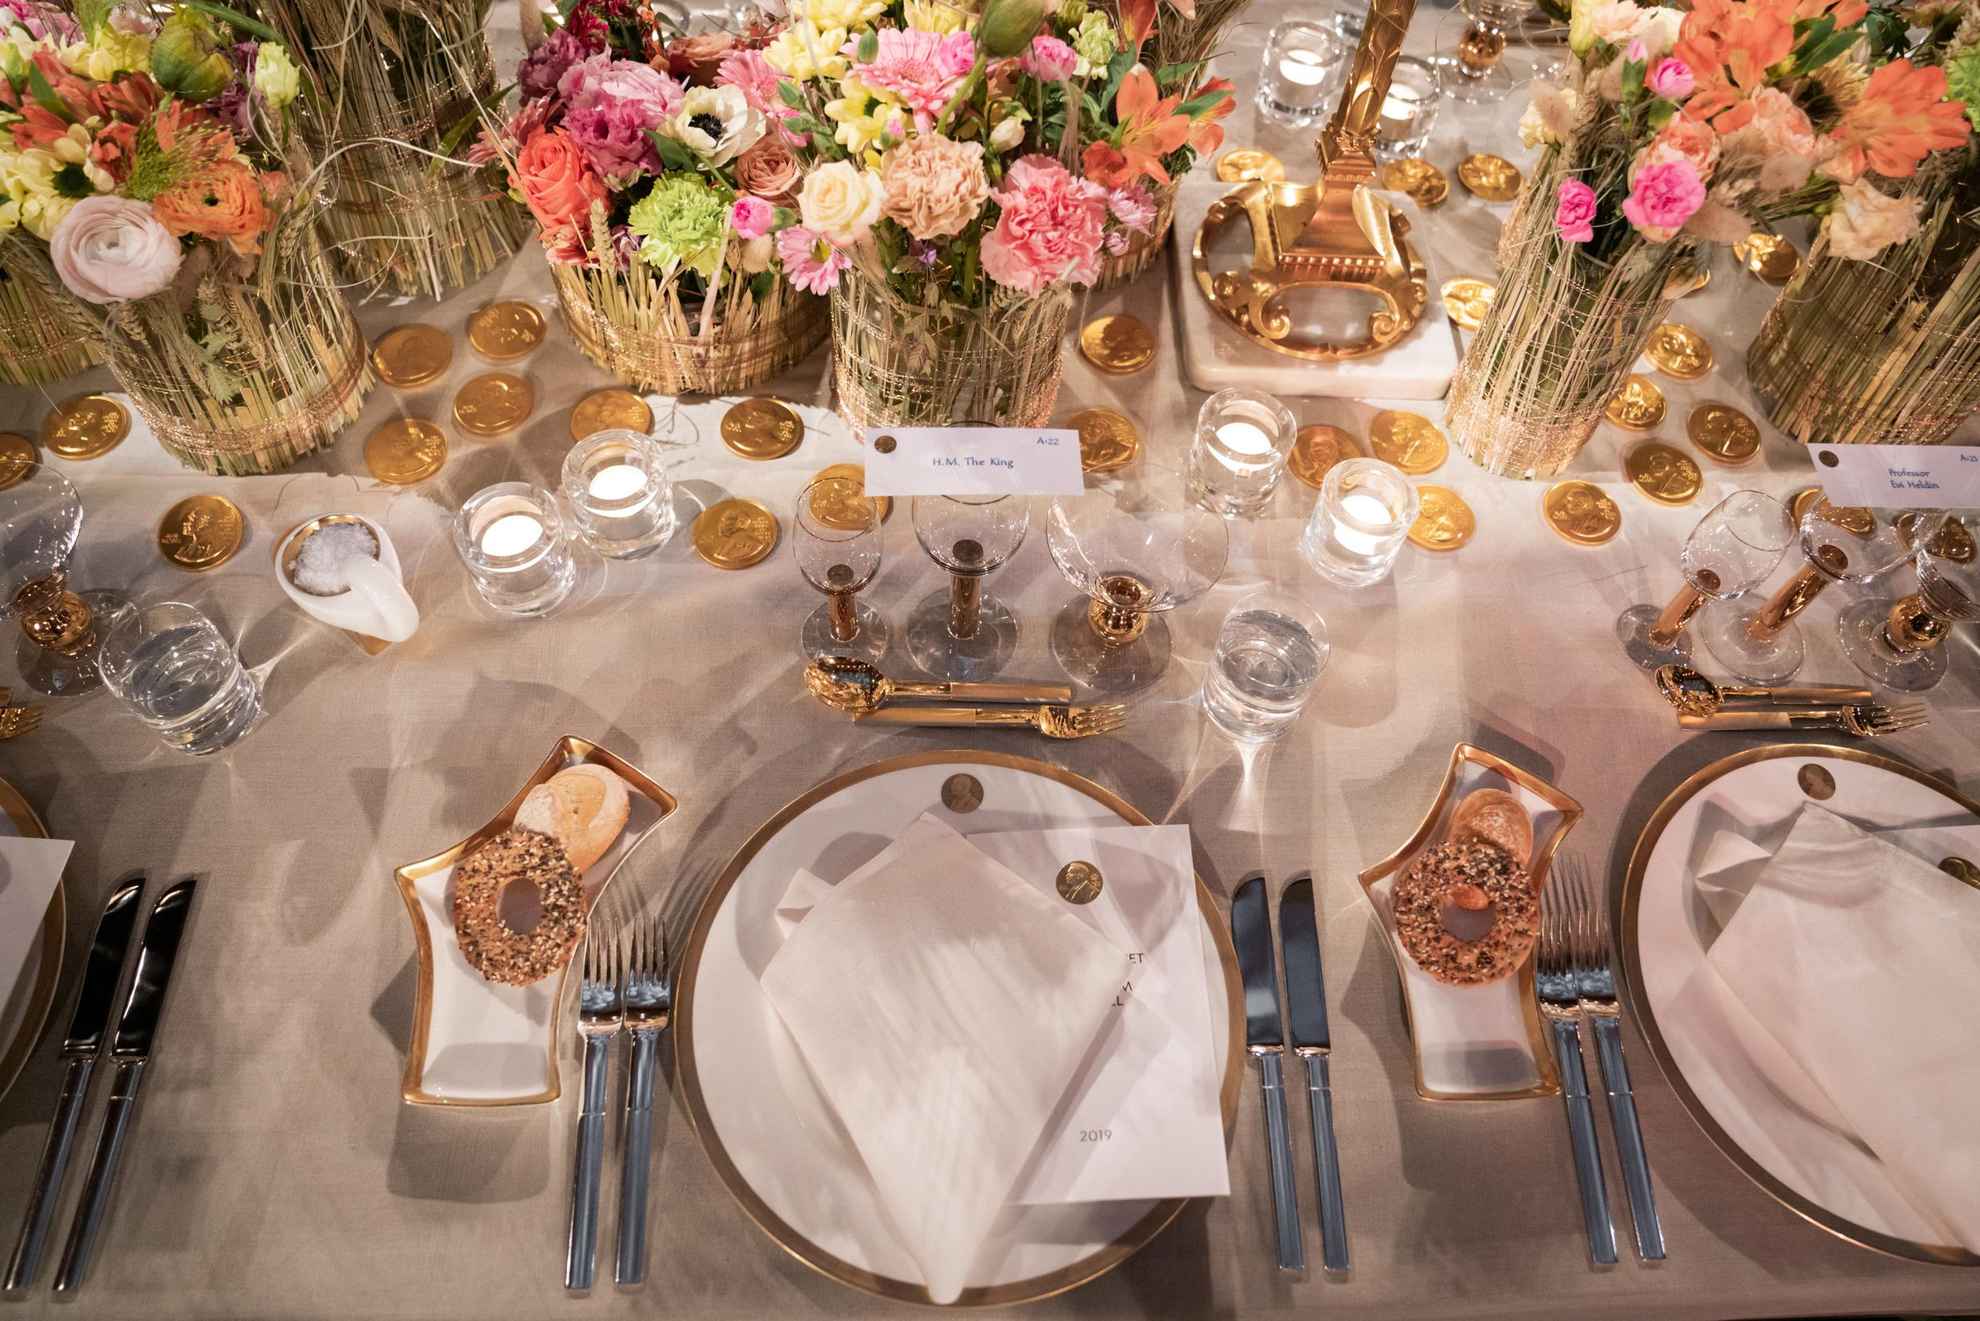 Ein Geschirr in Weiß mit goldenen Details wird auf einem Tisch mit einer weißen Tischdecke gedeckt. In der Mitte des Tisches stehen bunte Blumen in Vasen.